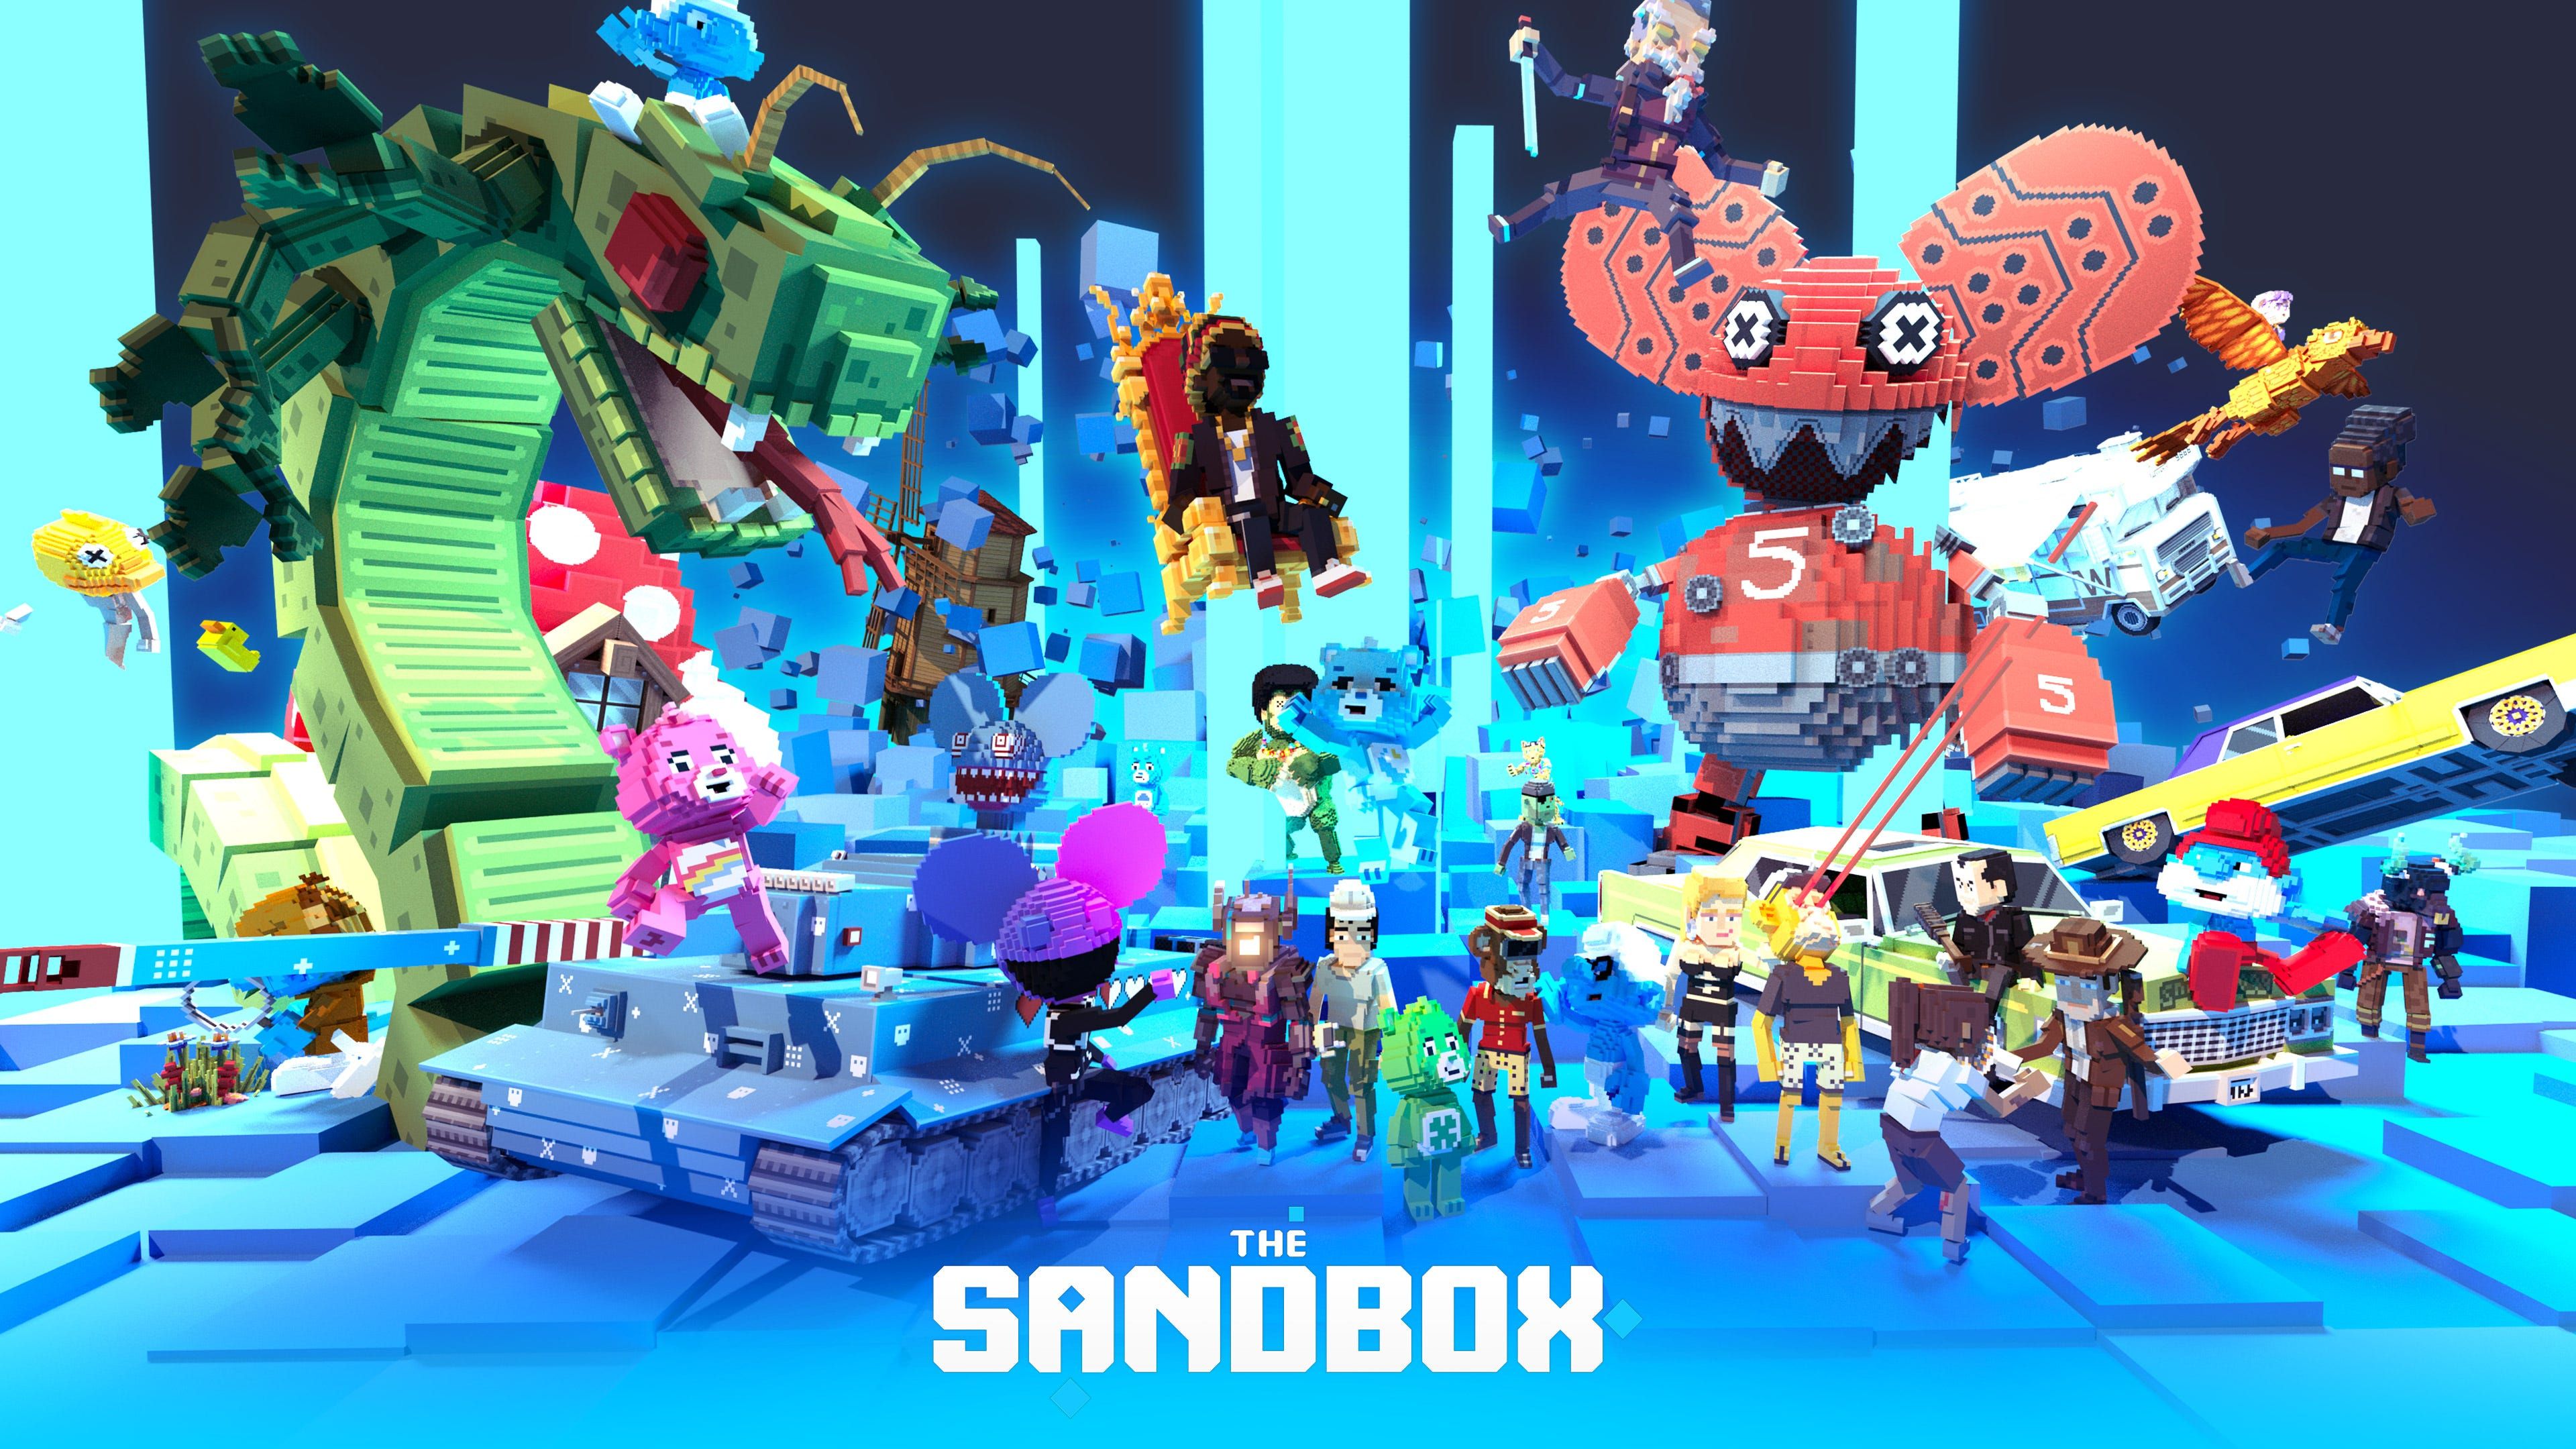 La compañía Animoca Brands de Yat Siu fue una de las primeras inversoras en el proyecto de juego metaverso The Sandbox.